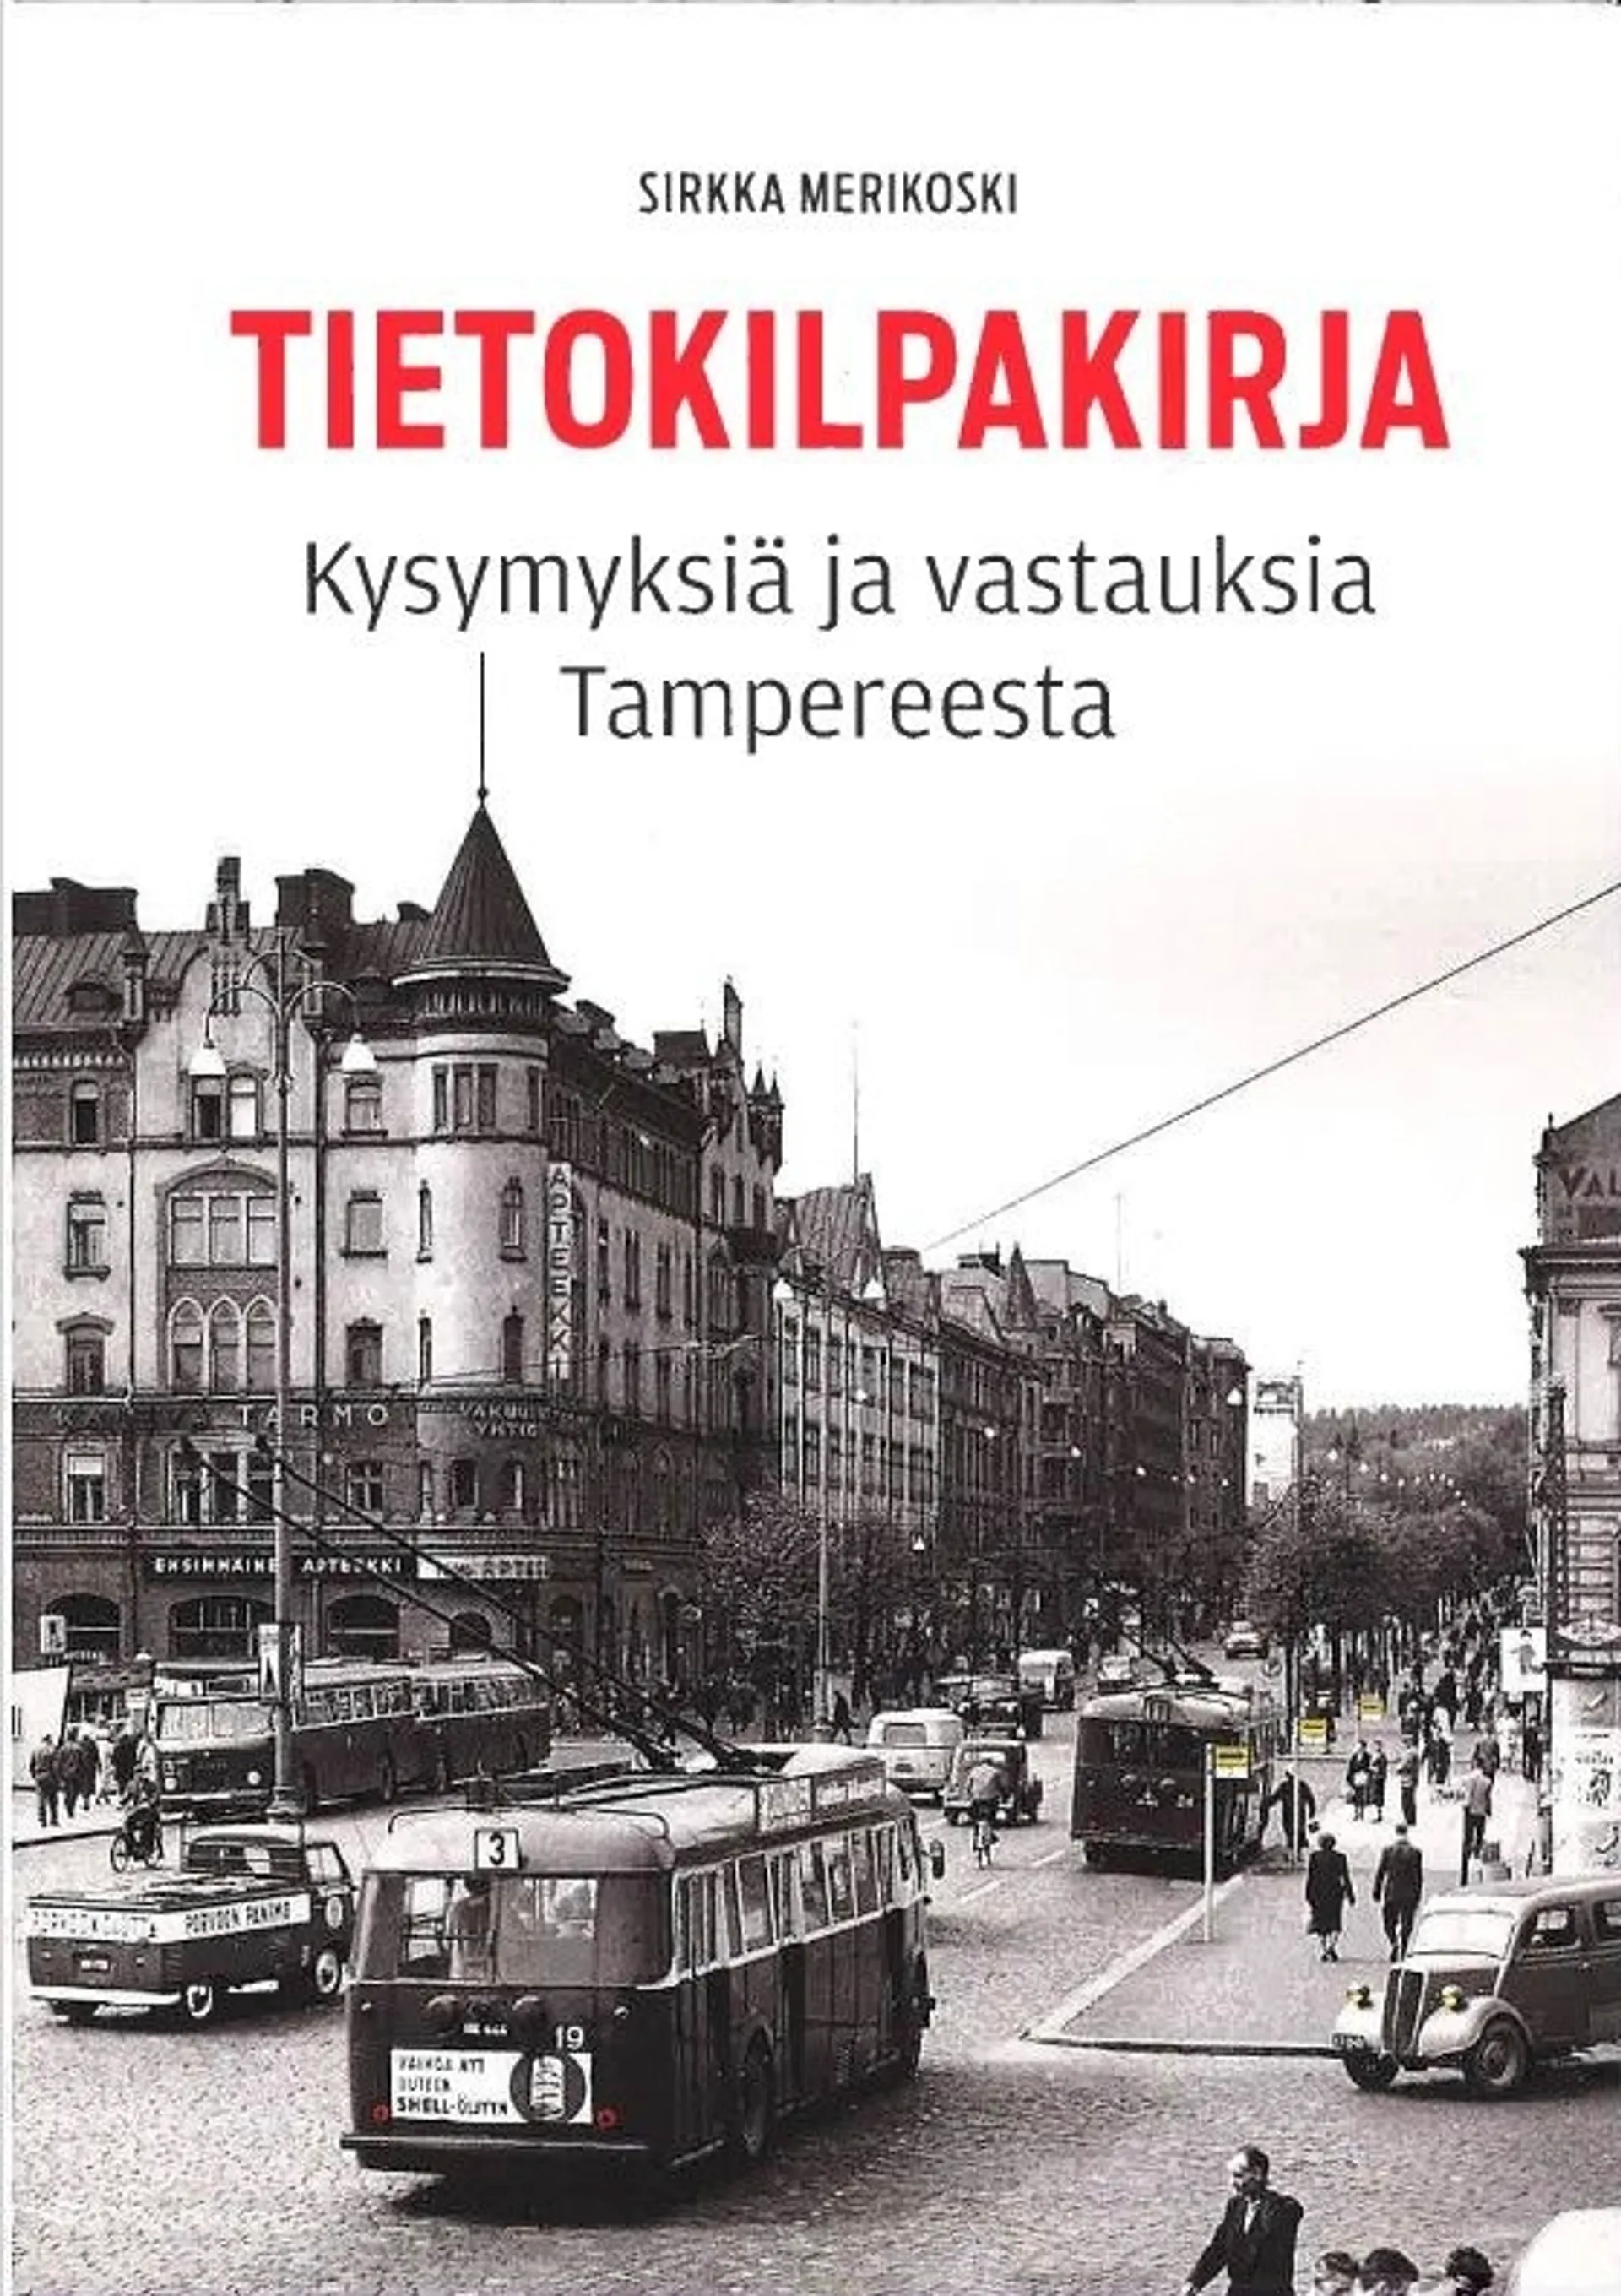 Merikoski, Tietokilpakirja - Kysymyksiä ja vastauksia Tampereesta